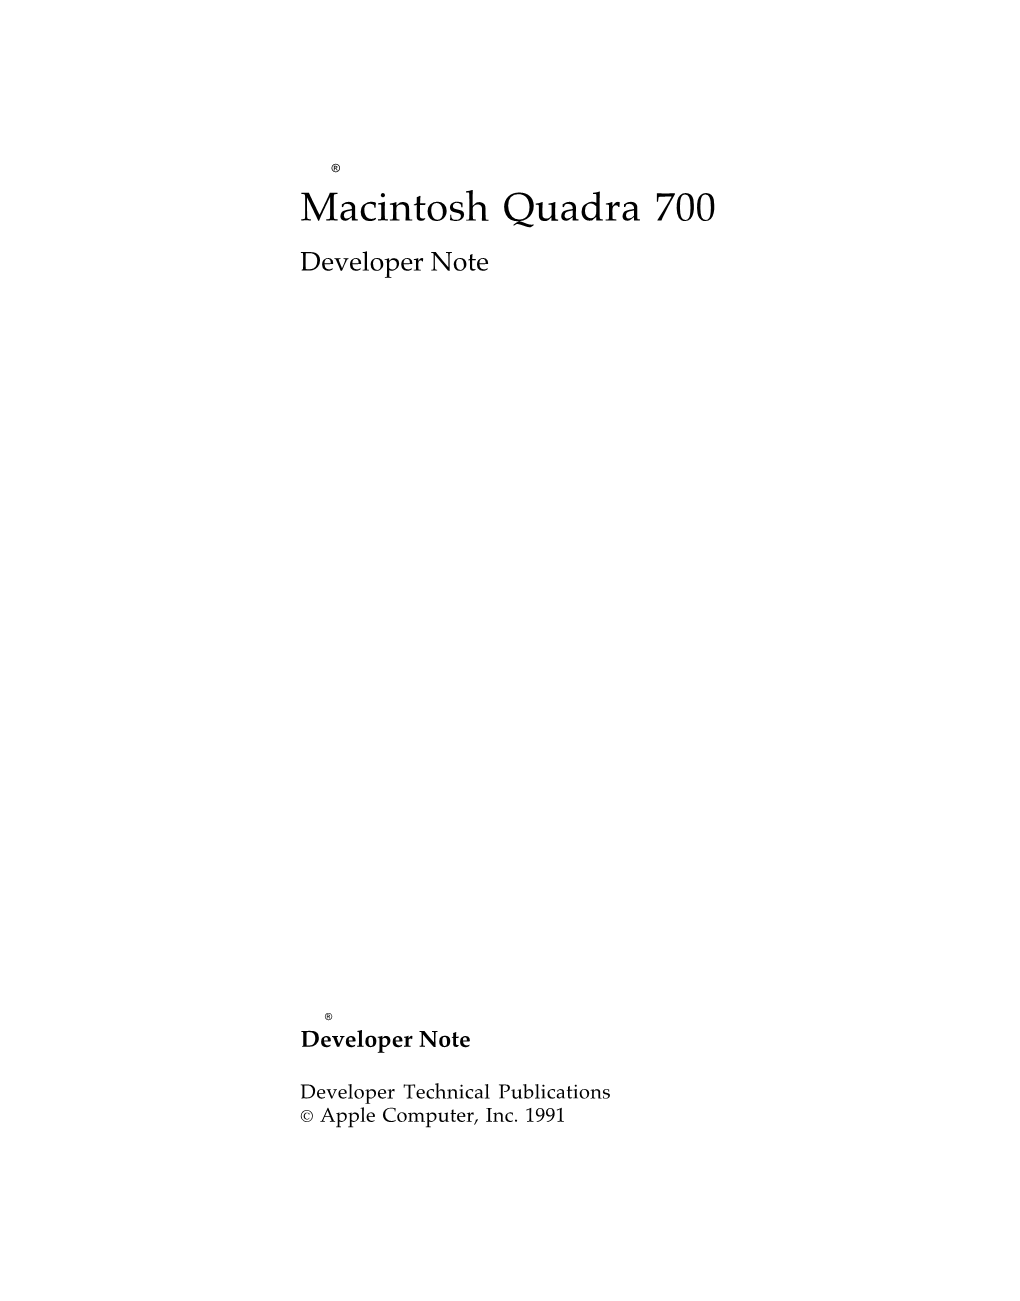 Macintosh Quadra 700 Developer Note